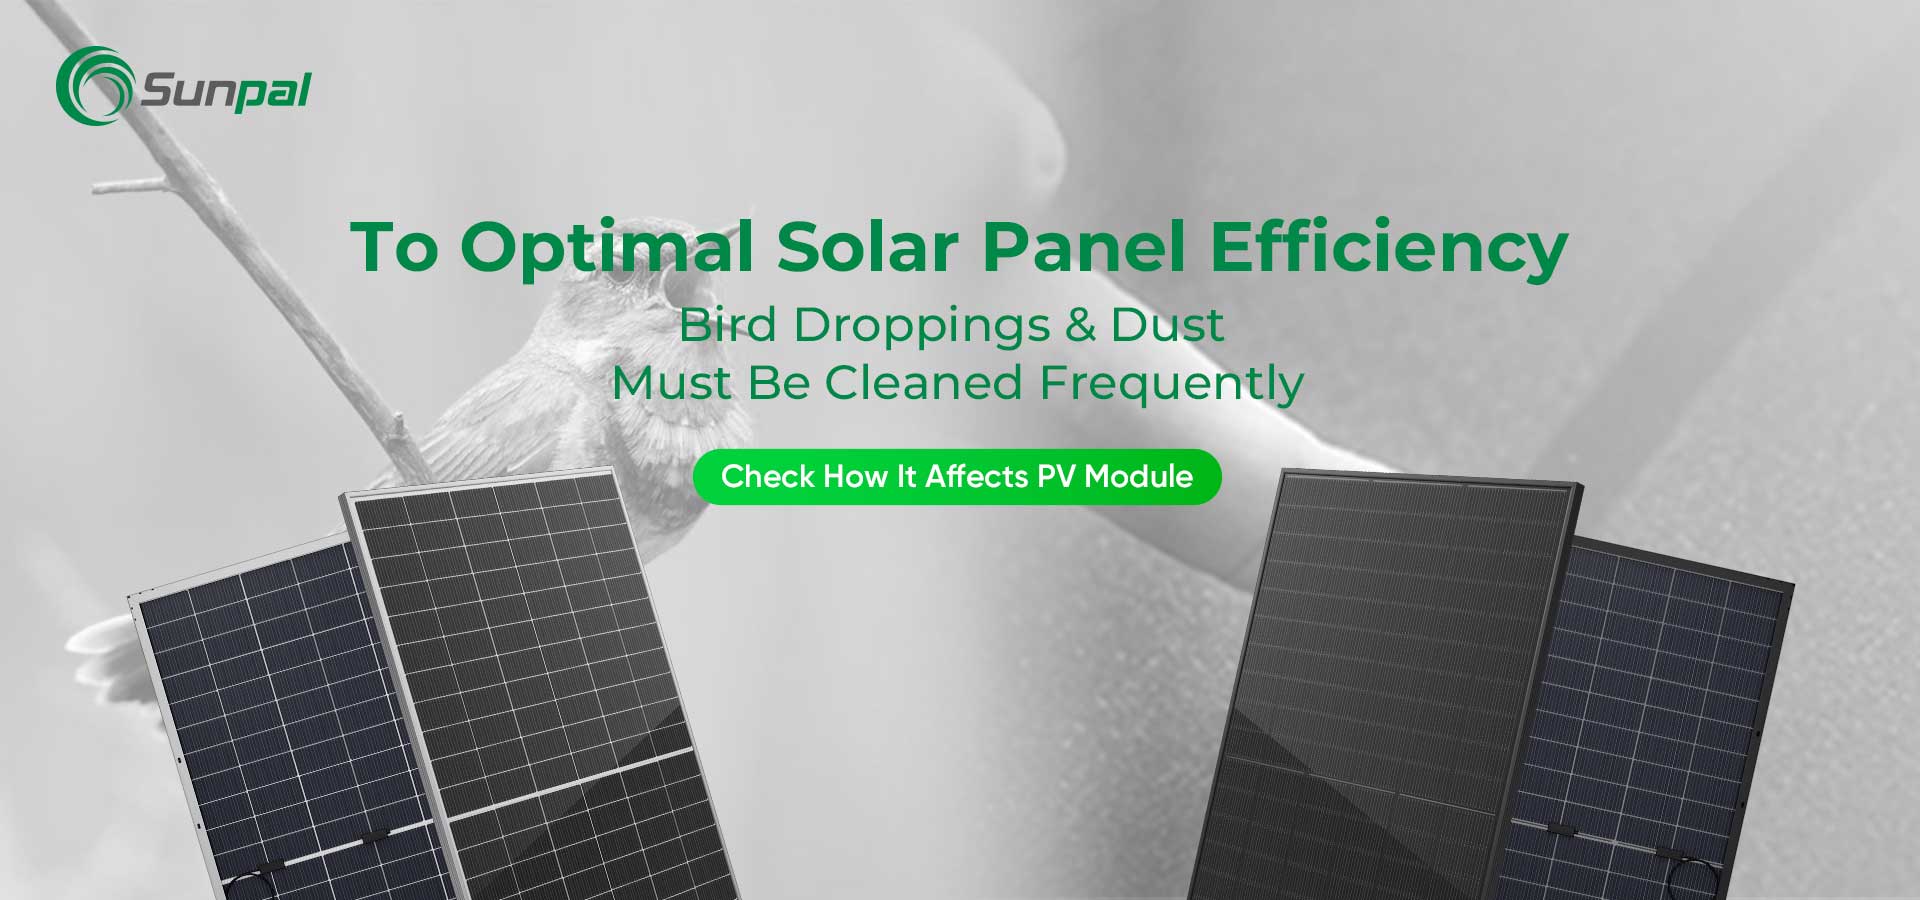 Støv- og fugleavfall: Rengjøring for optimal ytelse av solcellepanelet